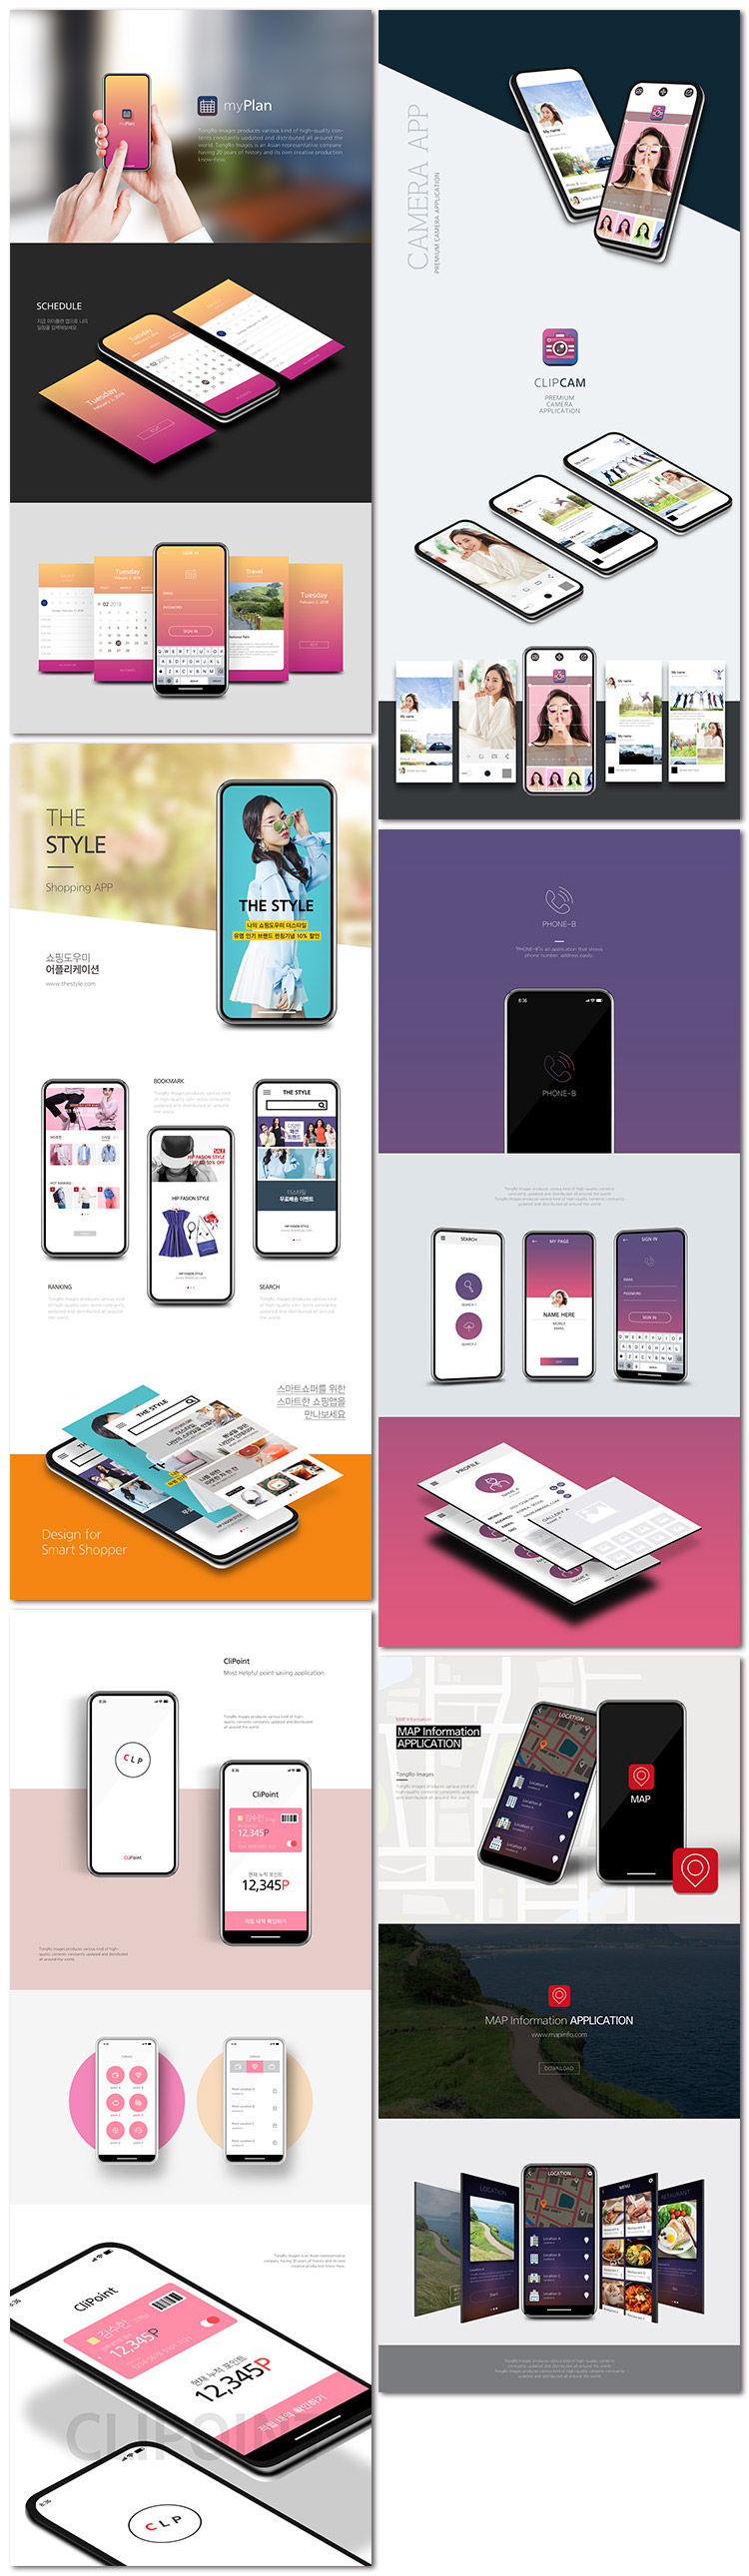 手机样机贴图app应用界面展示机ui商务广告移动psd素材模板设计